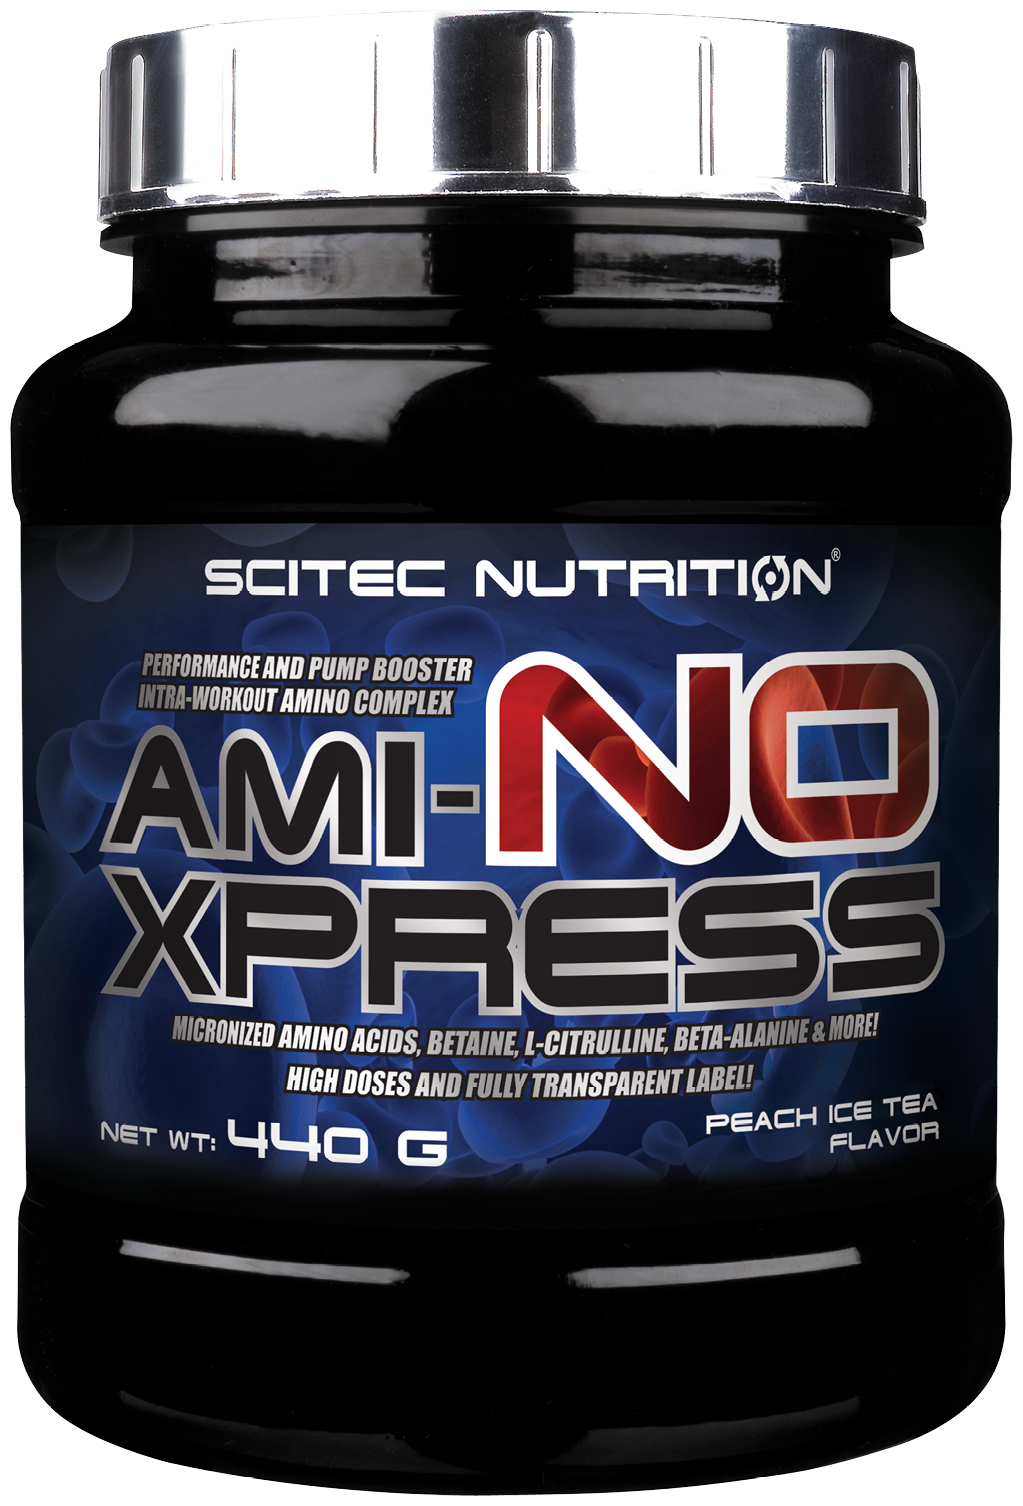 Аминокислотный комплекс Scitec Nutrition AMI-NO Xpress, персиковый чай, 440 гр.